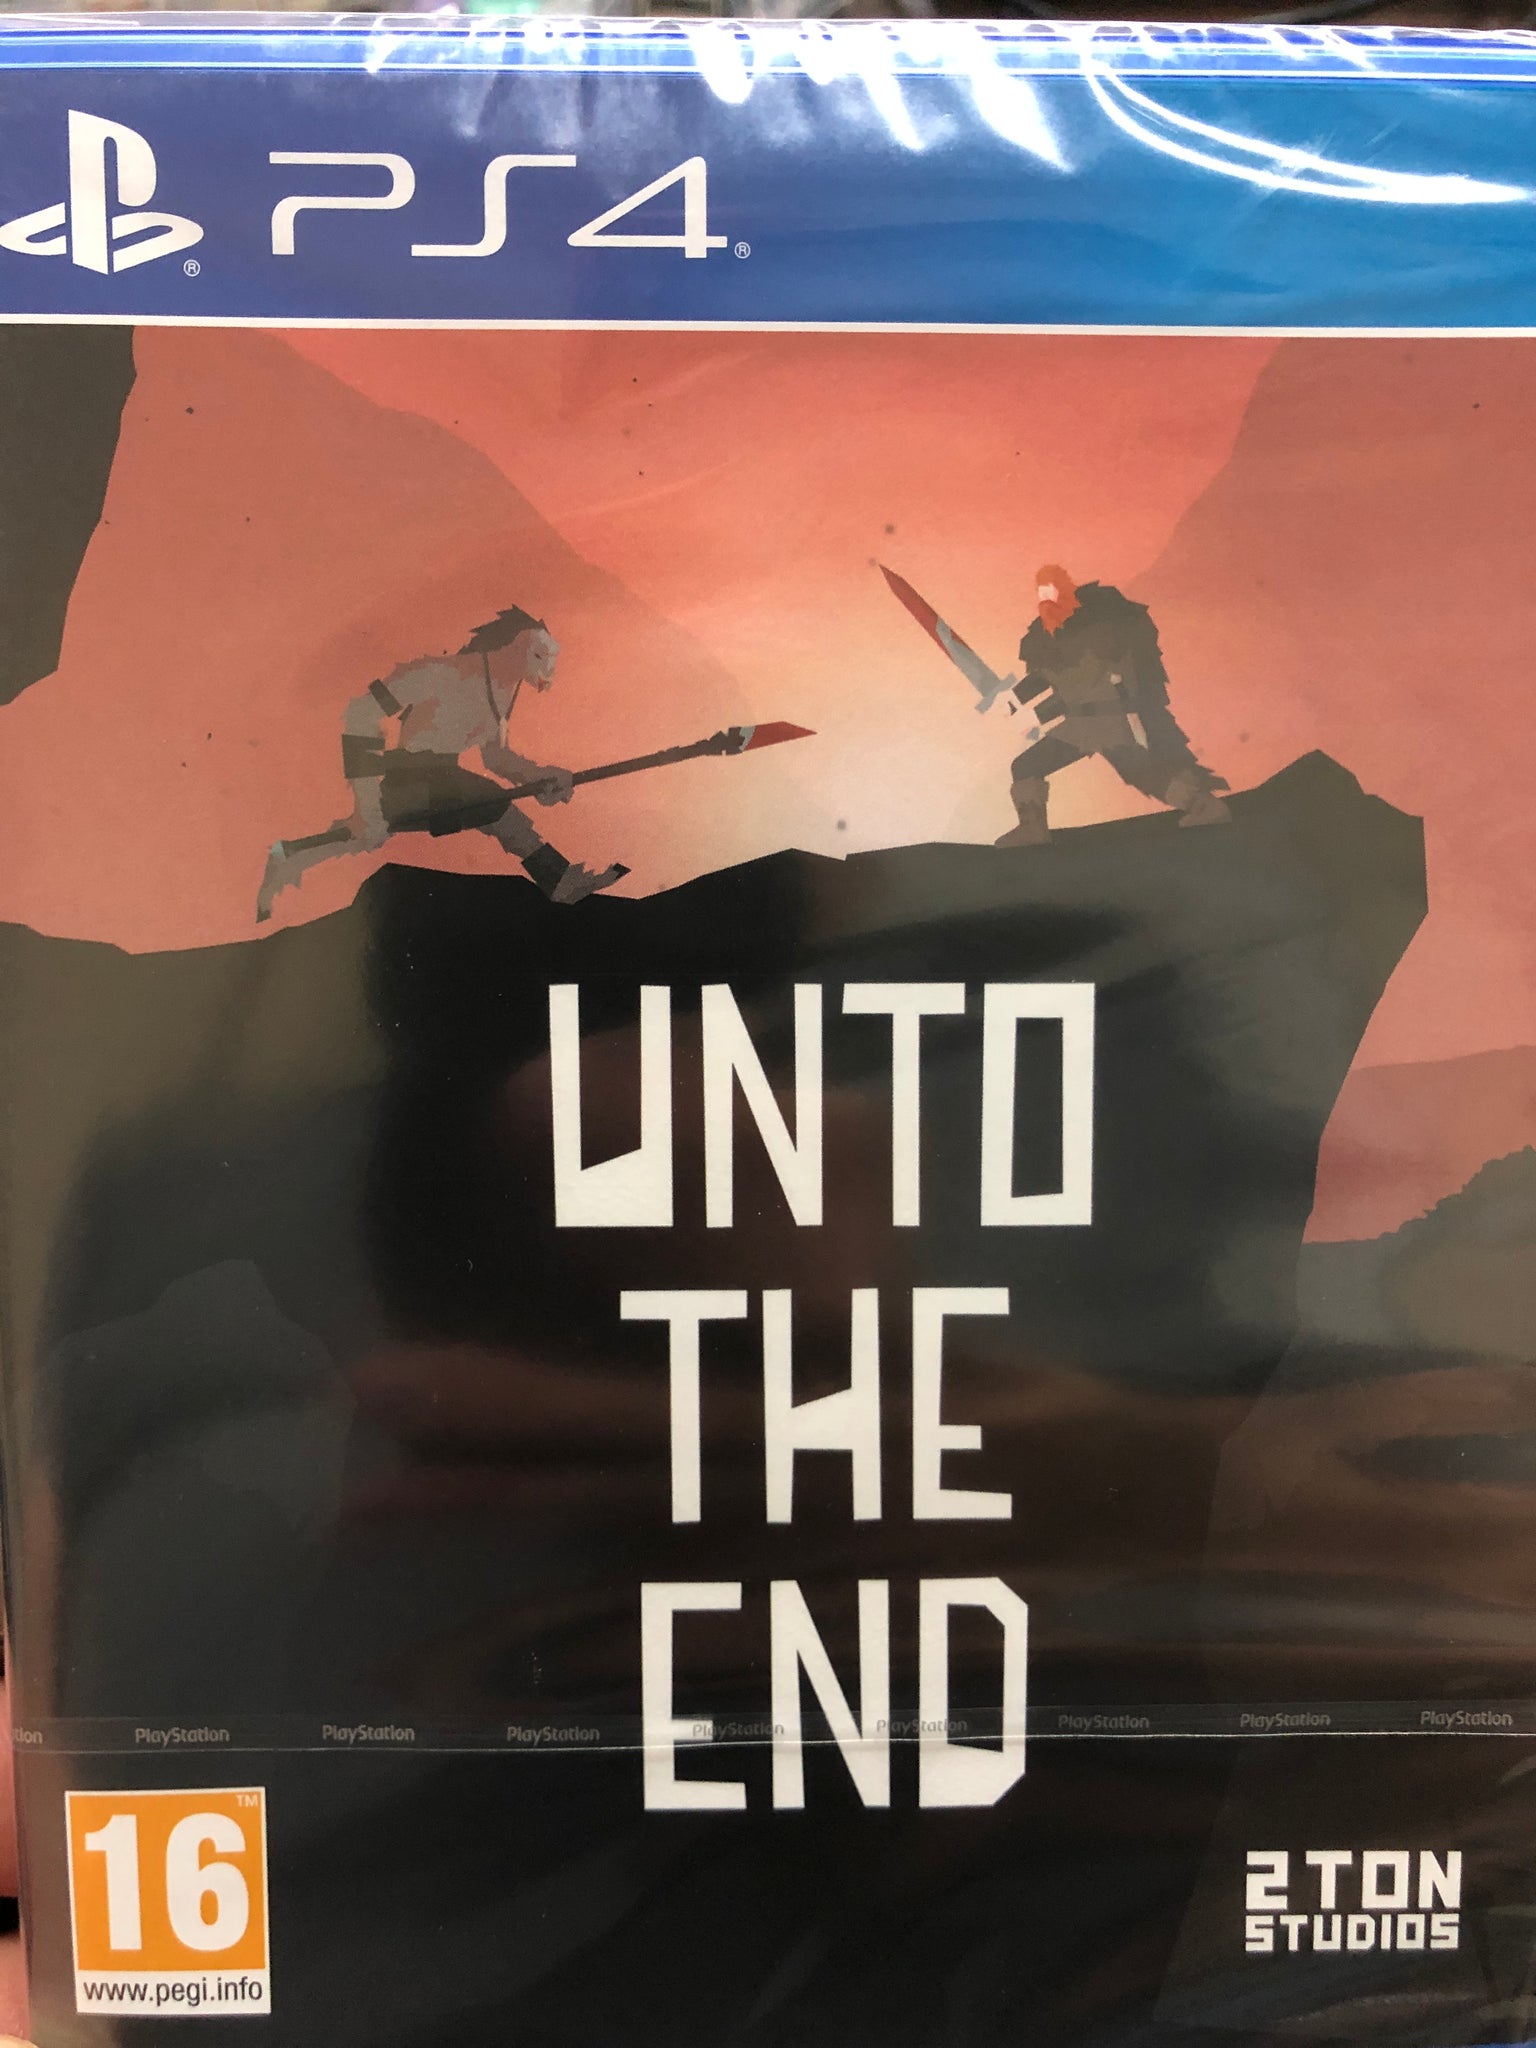 PS4 "Unto The End"